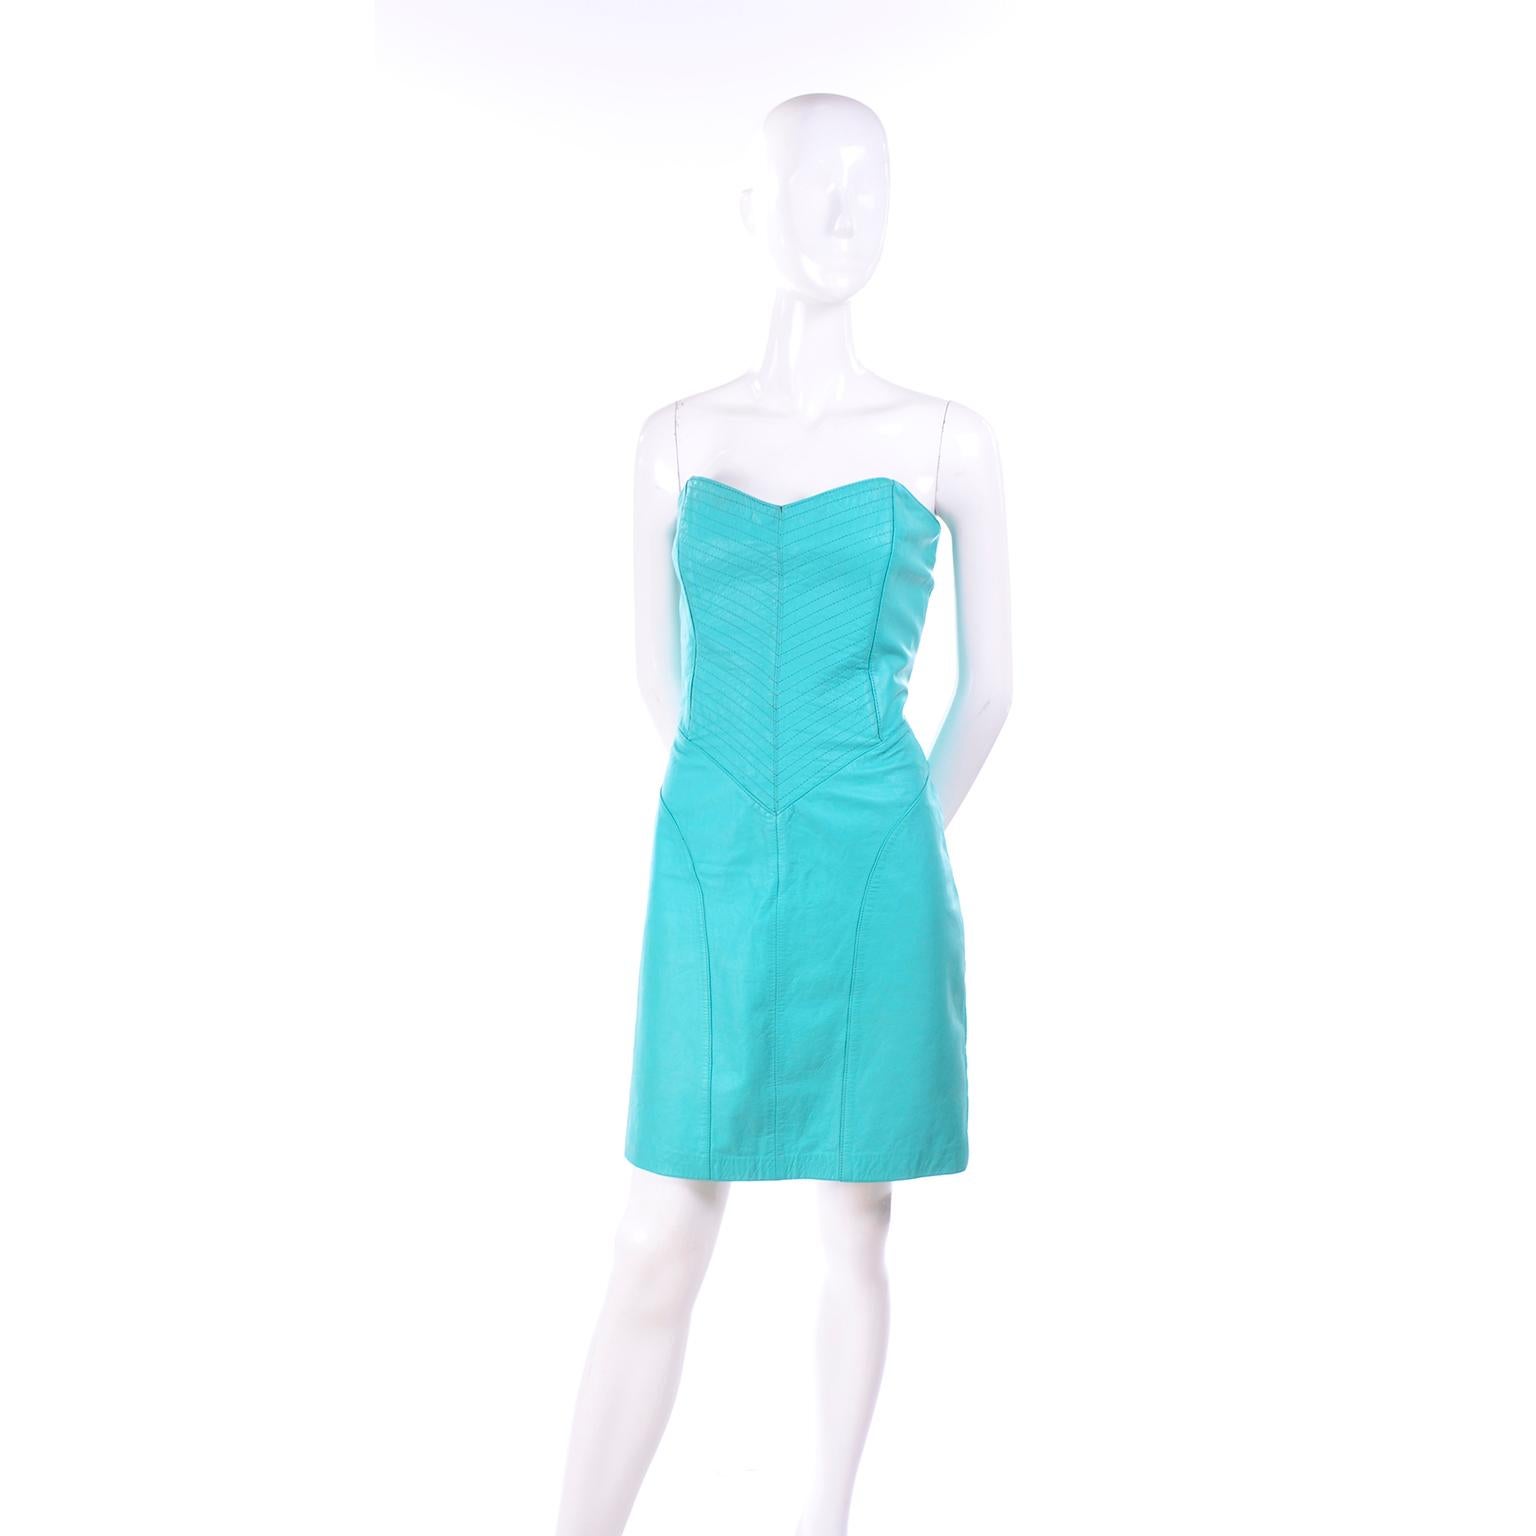 Voici une robe en cuir turquoise sans bretelles vintage Yucatan Bay des années 1980.	des années 1980. Cette robe en cuir sans bretelles présente des surpiqûres intéressantes et des coutures détaillées. La robe peut être habillée pour les soirées ou